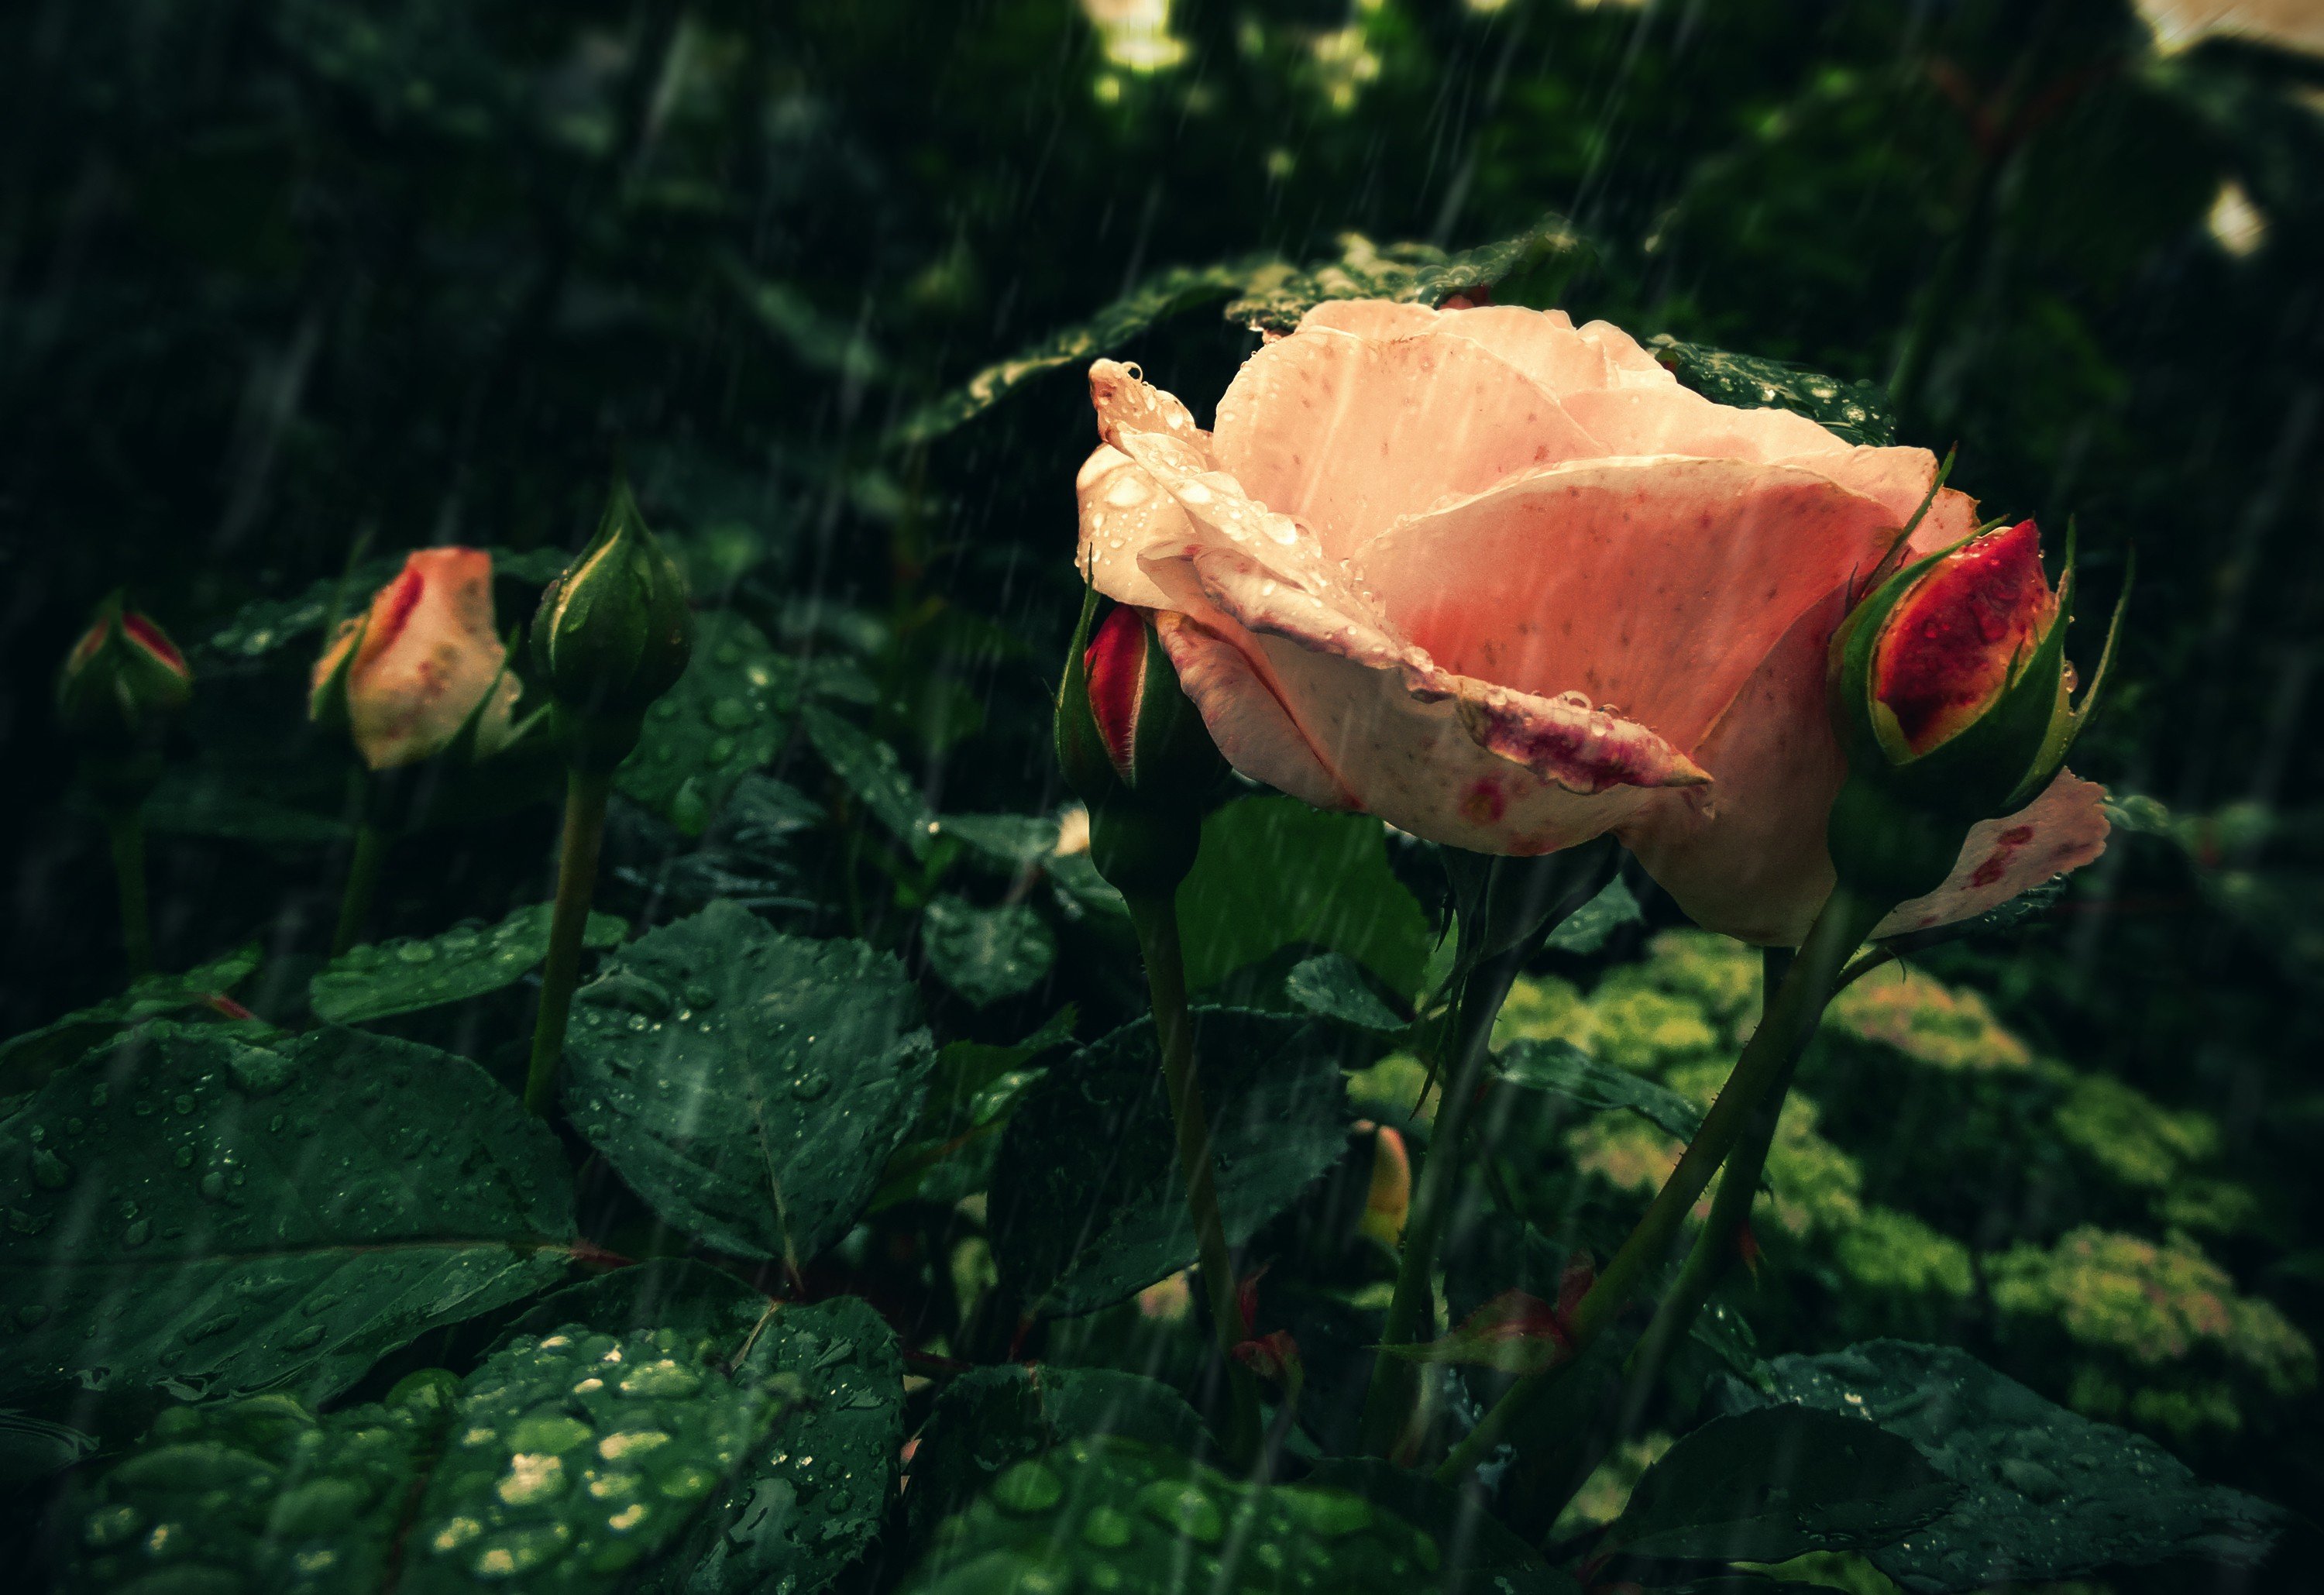 rain rose wallpaper,garden roses,nature,flower,rose,red